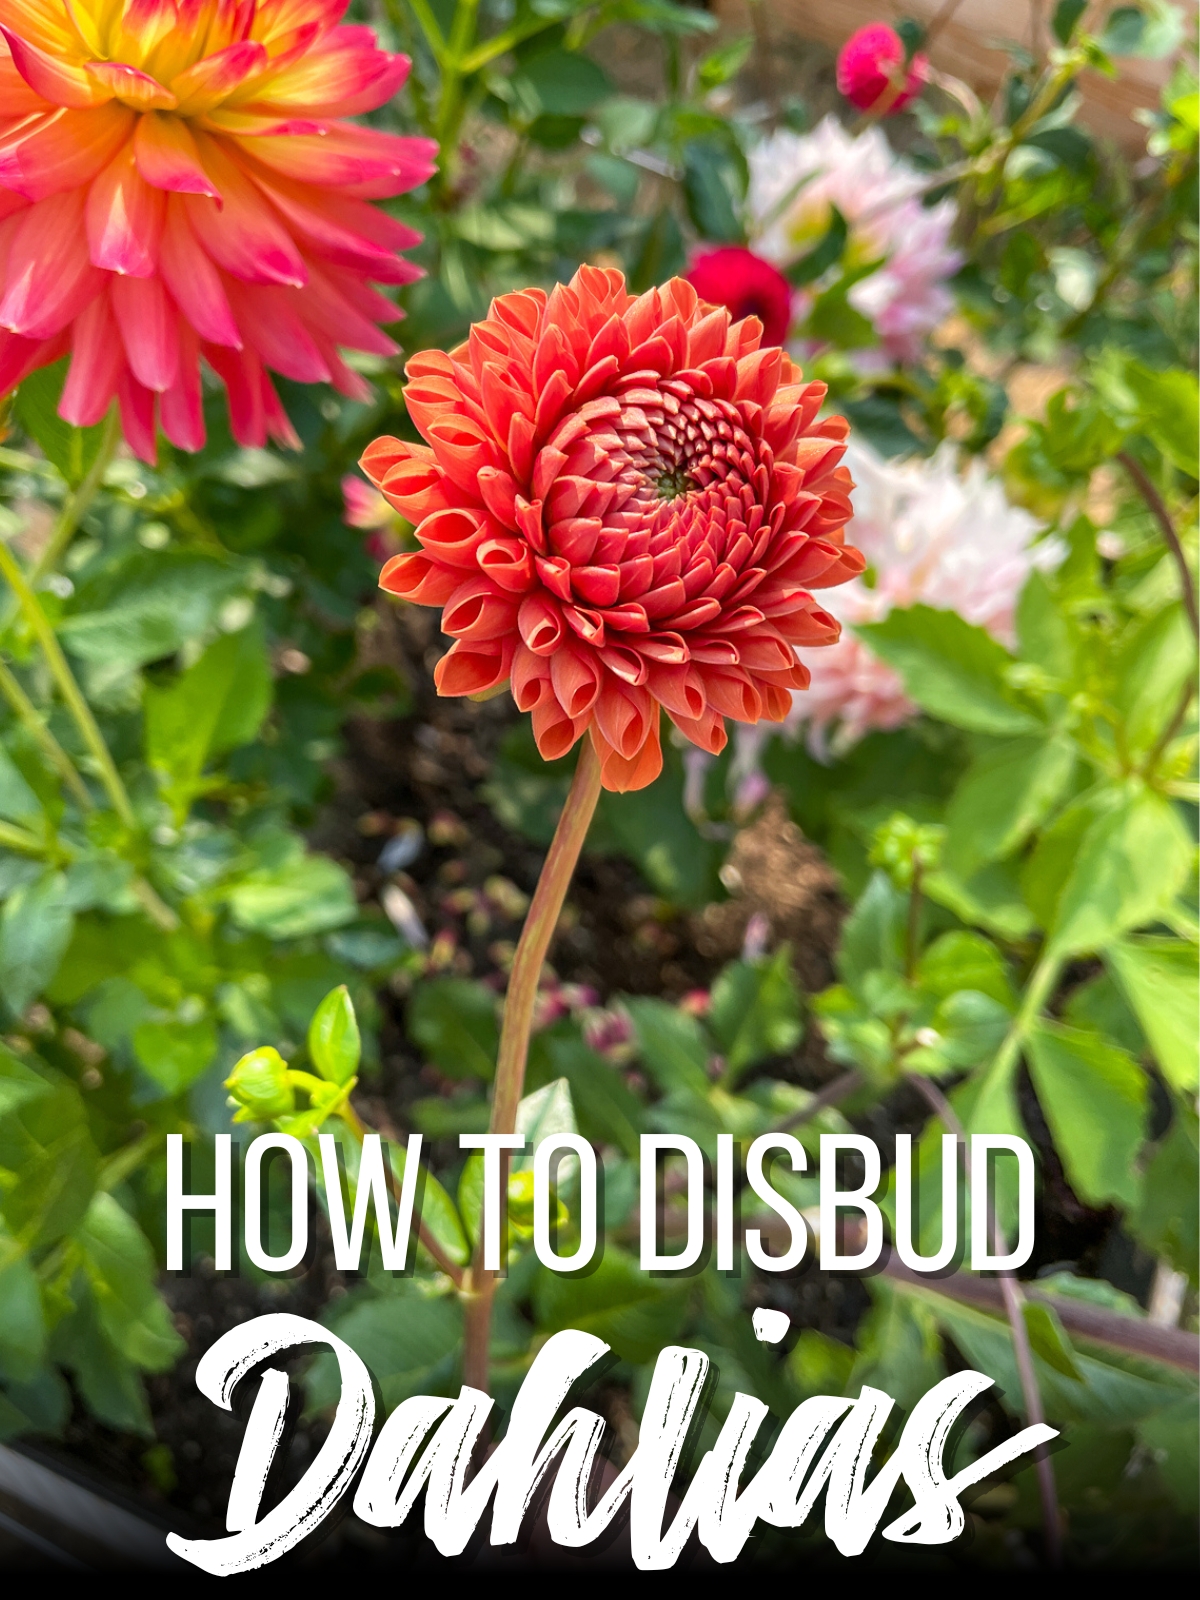 How to Disbud Dahlias